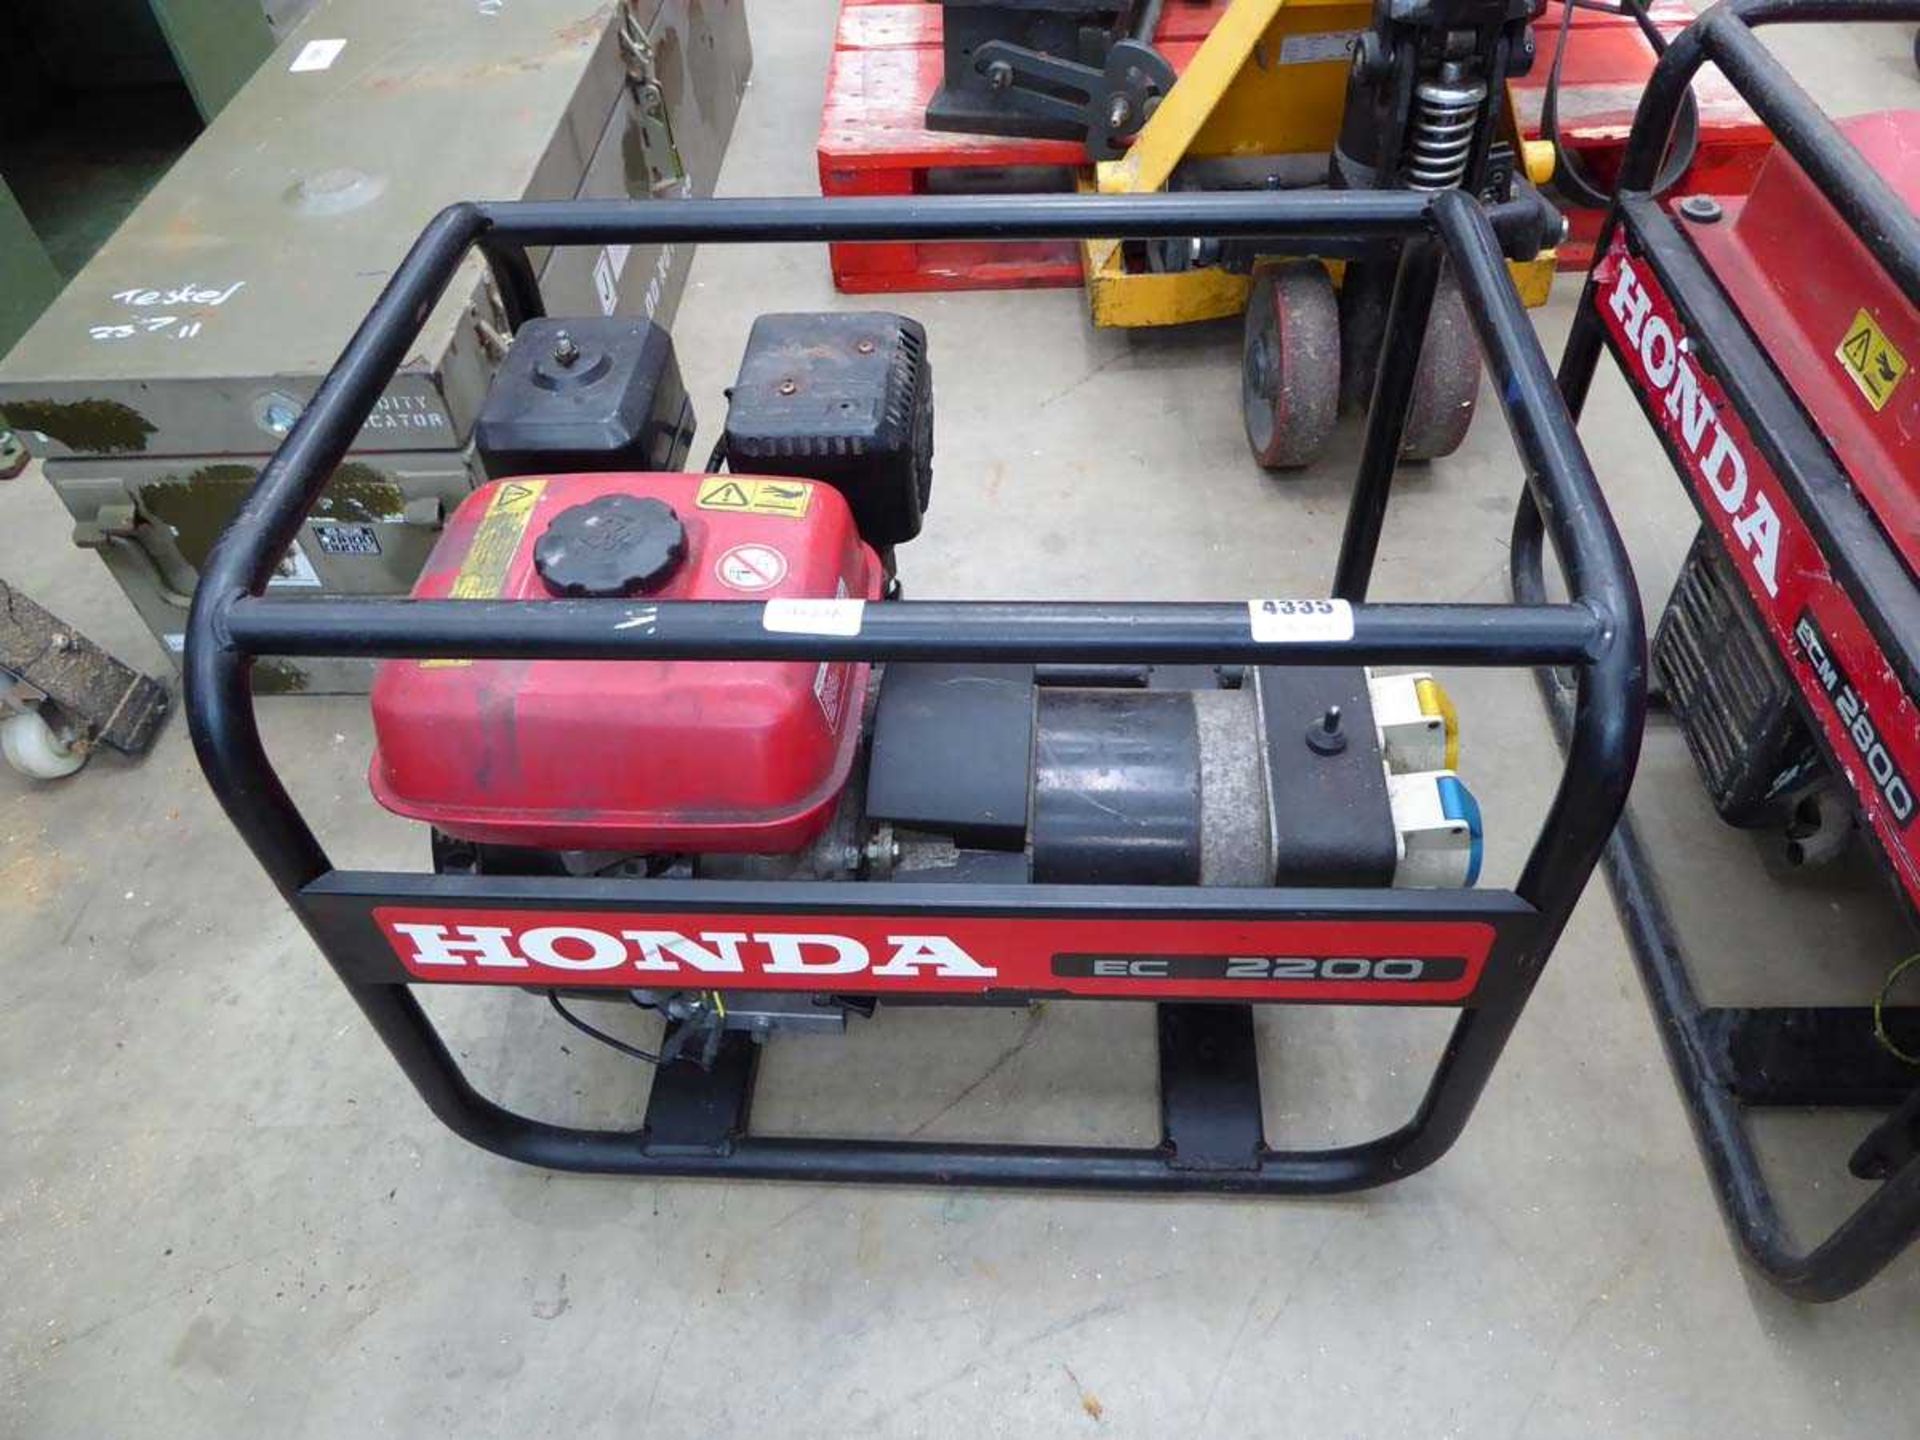 Honda petrol powered generator